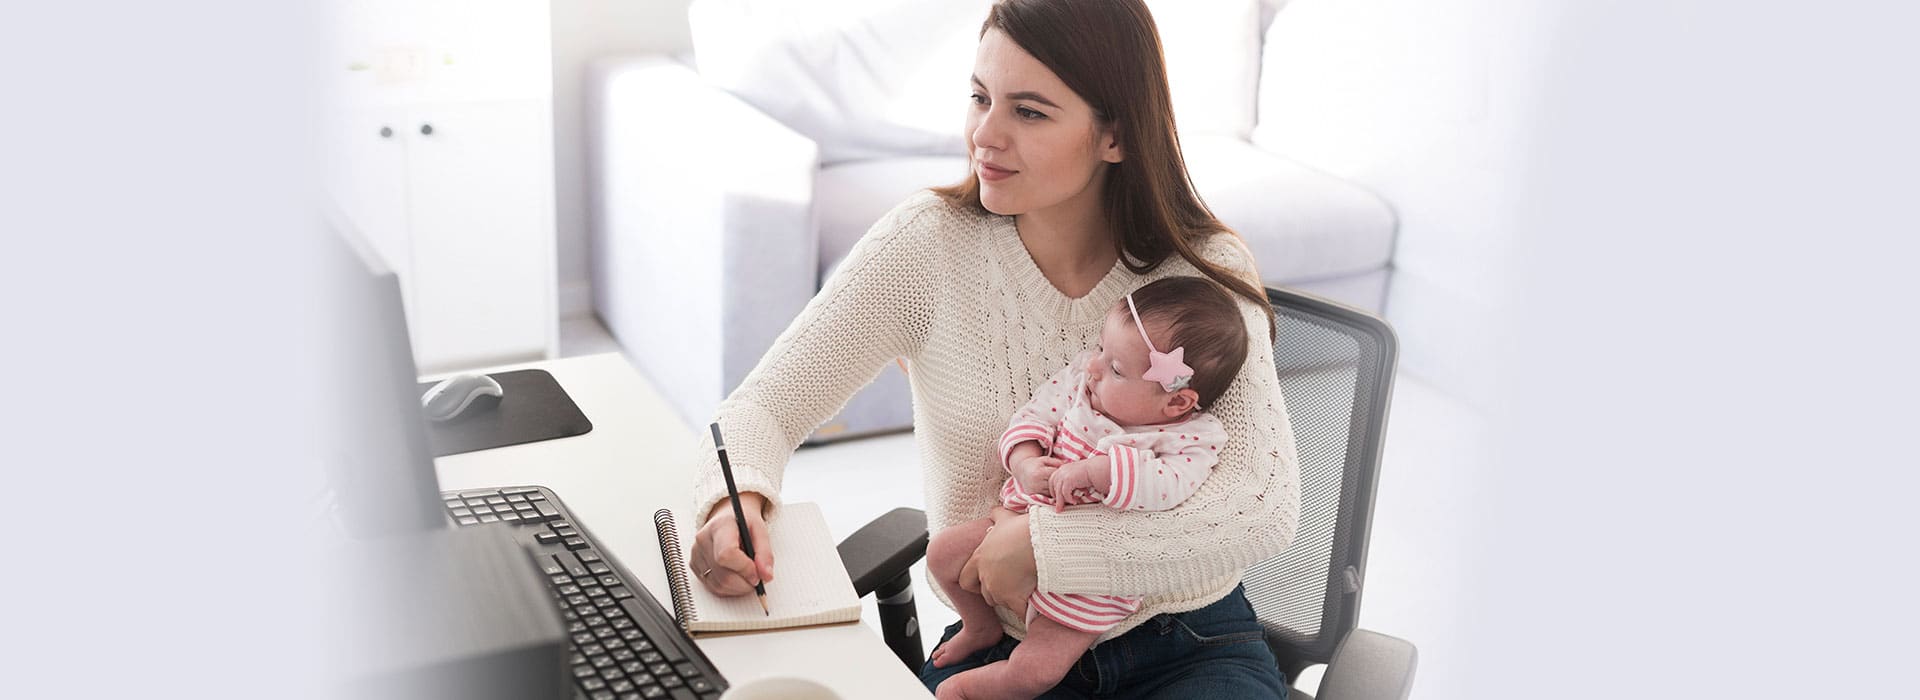 Mulher com um bebê no colo e fazendo anotações